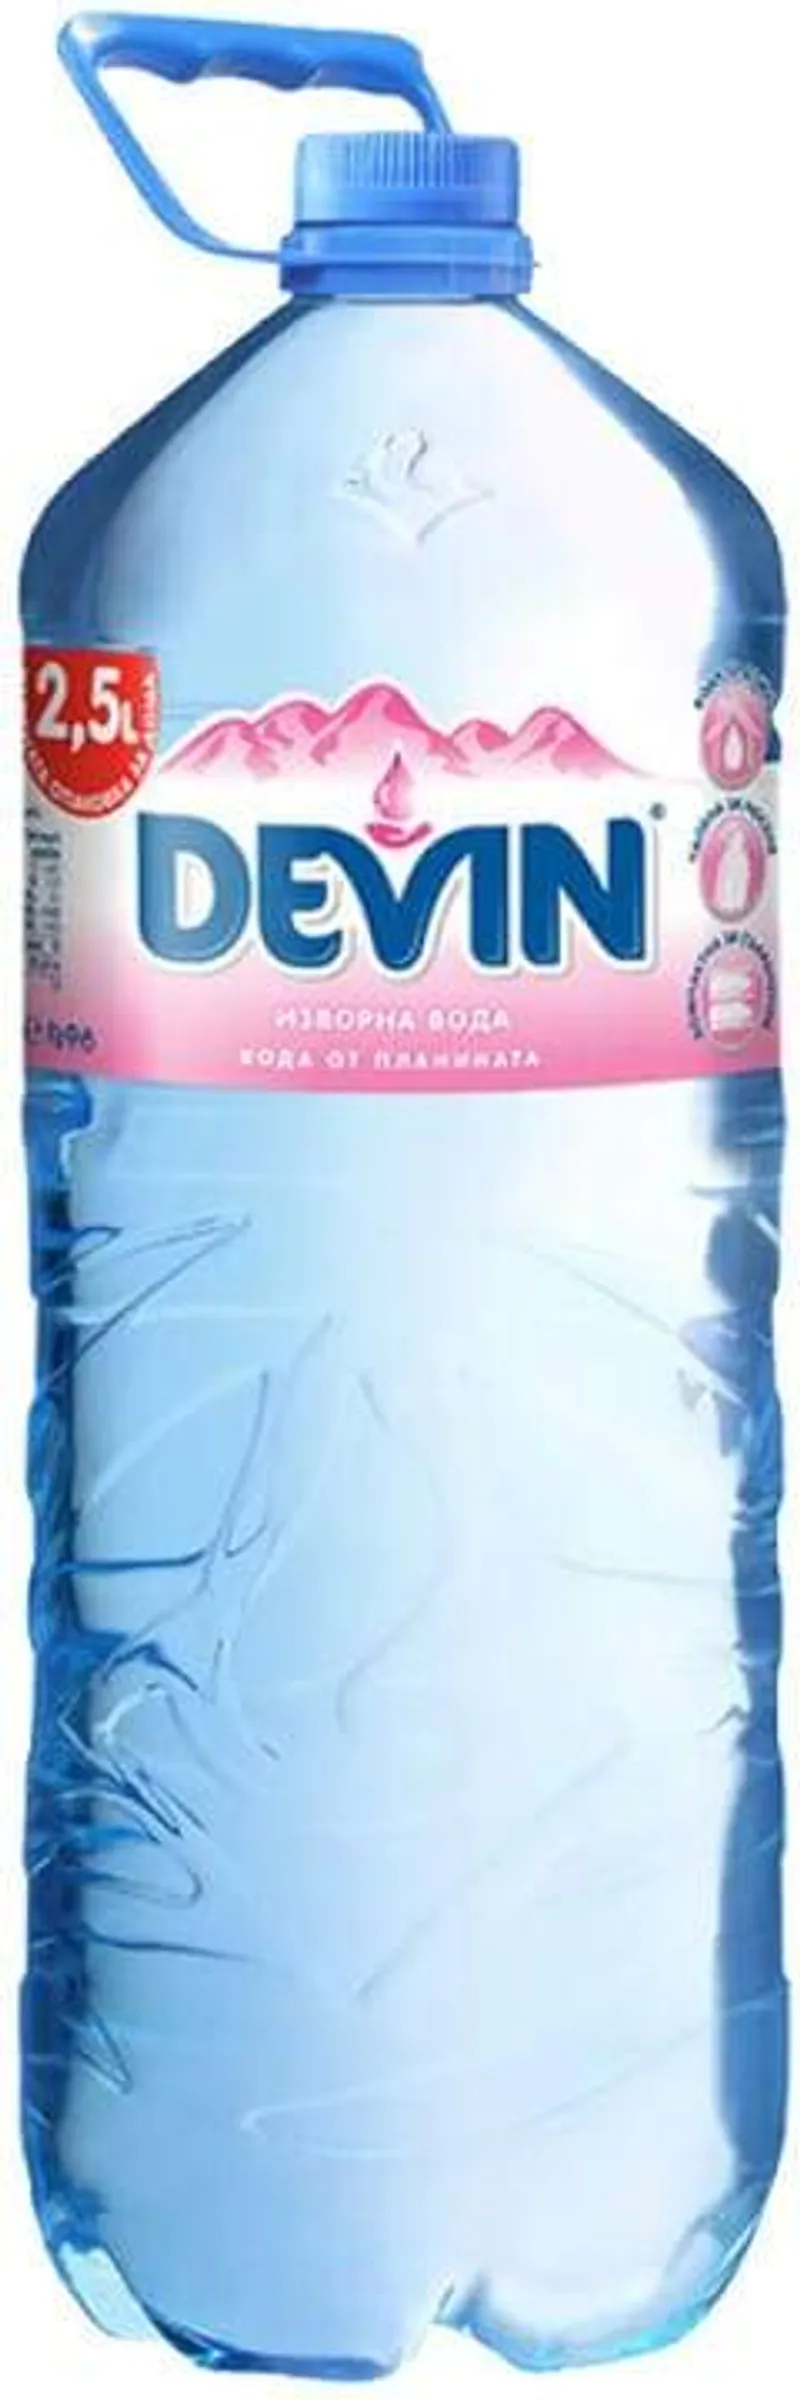 Изворна вода Девин (2.5л)